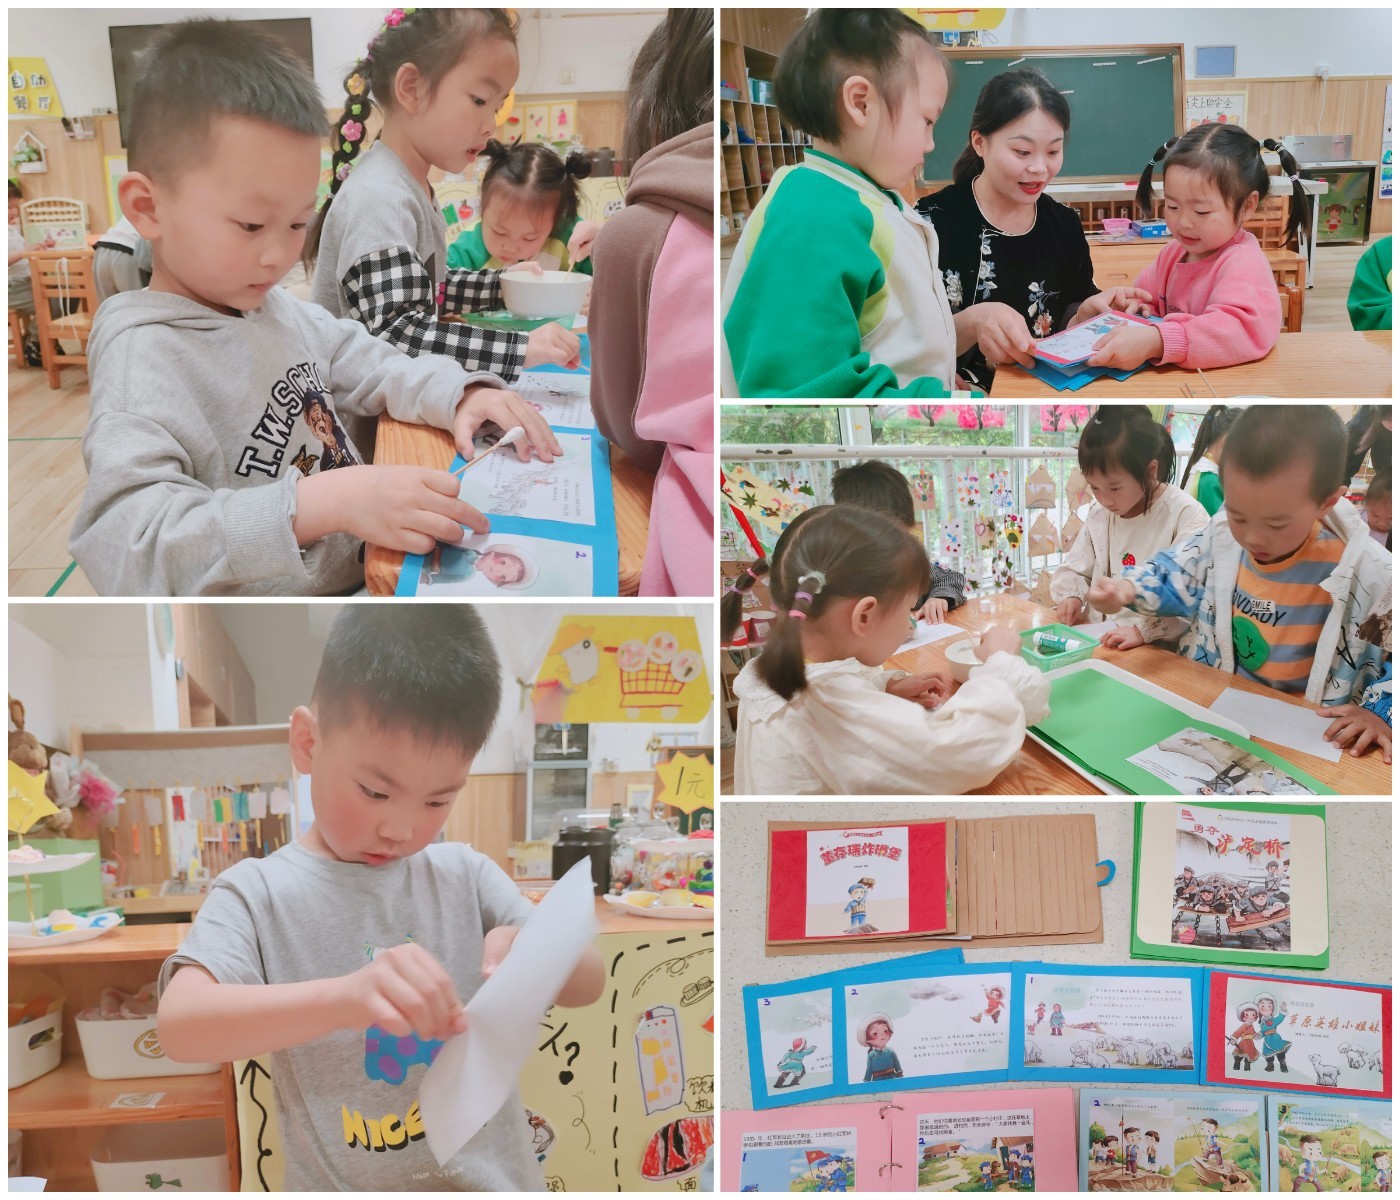 温江区和盛中心幼儿园开展家长助教活动